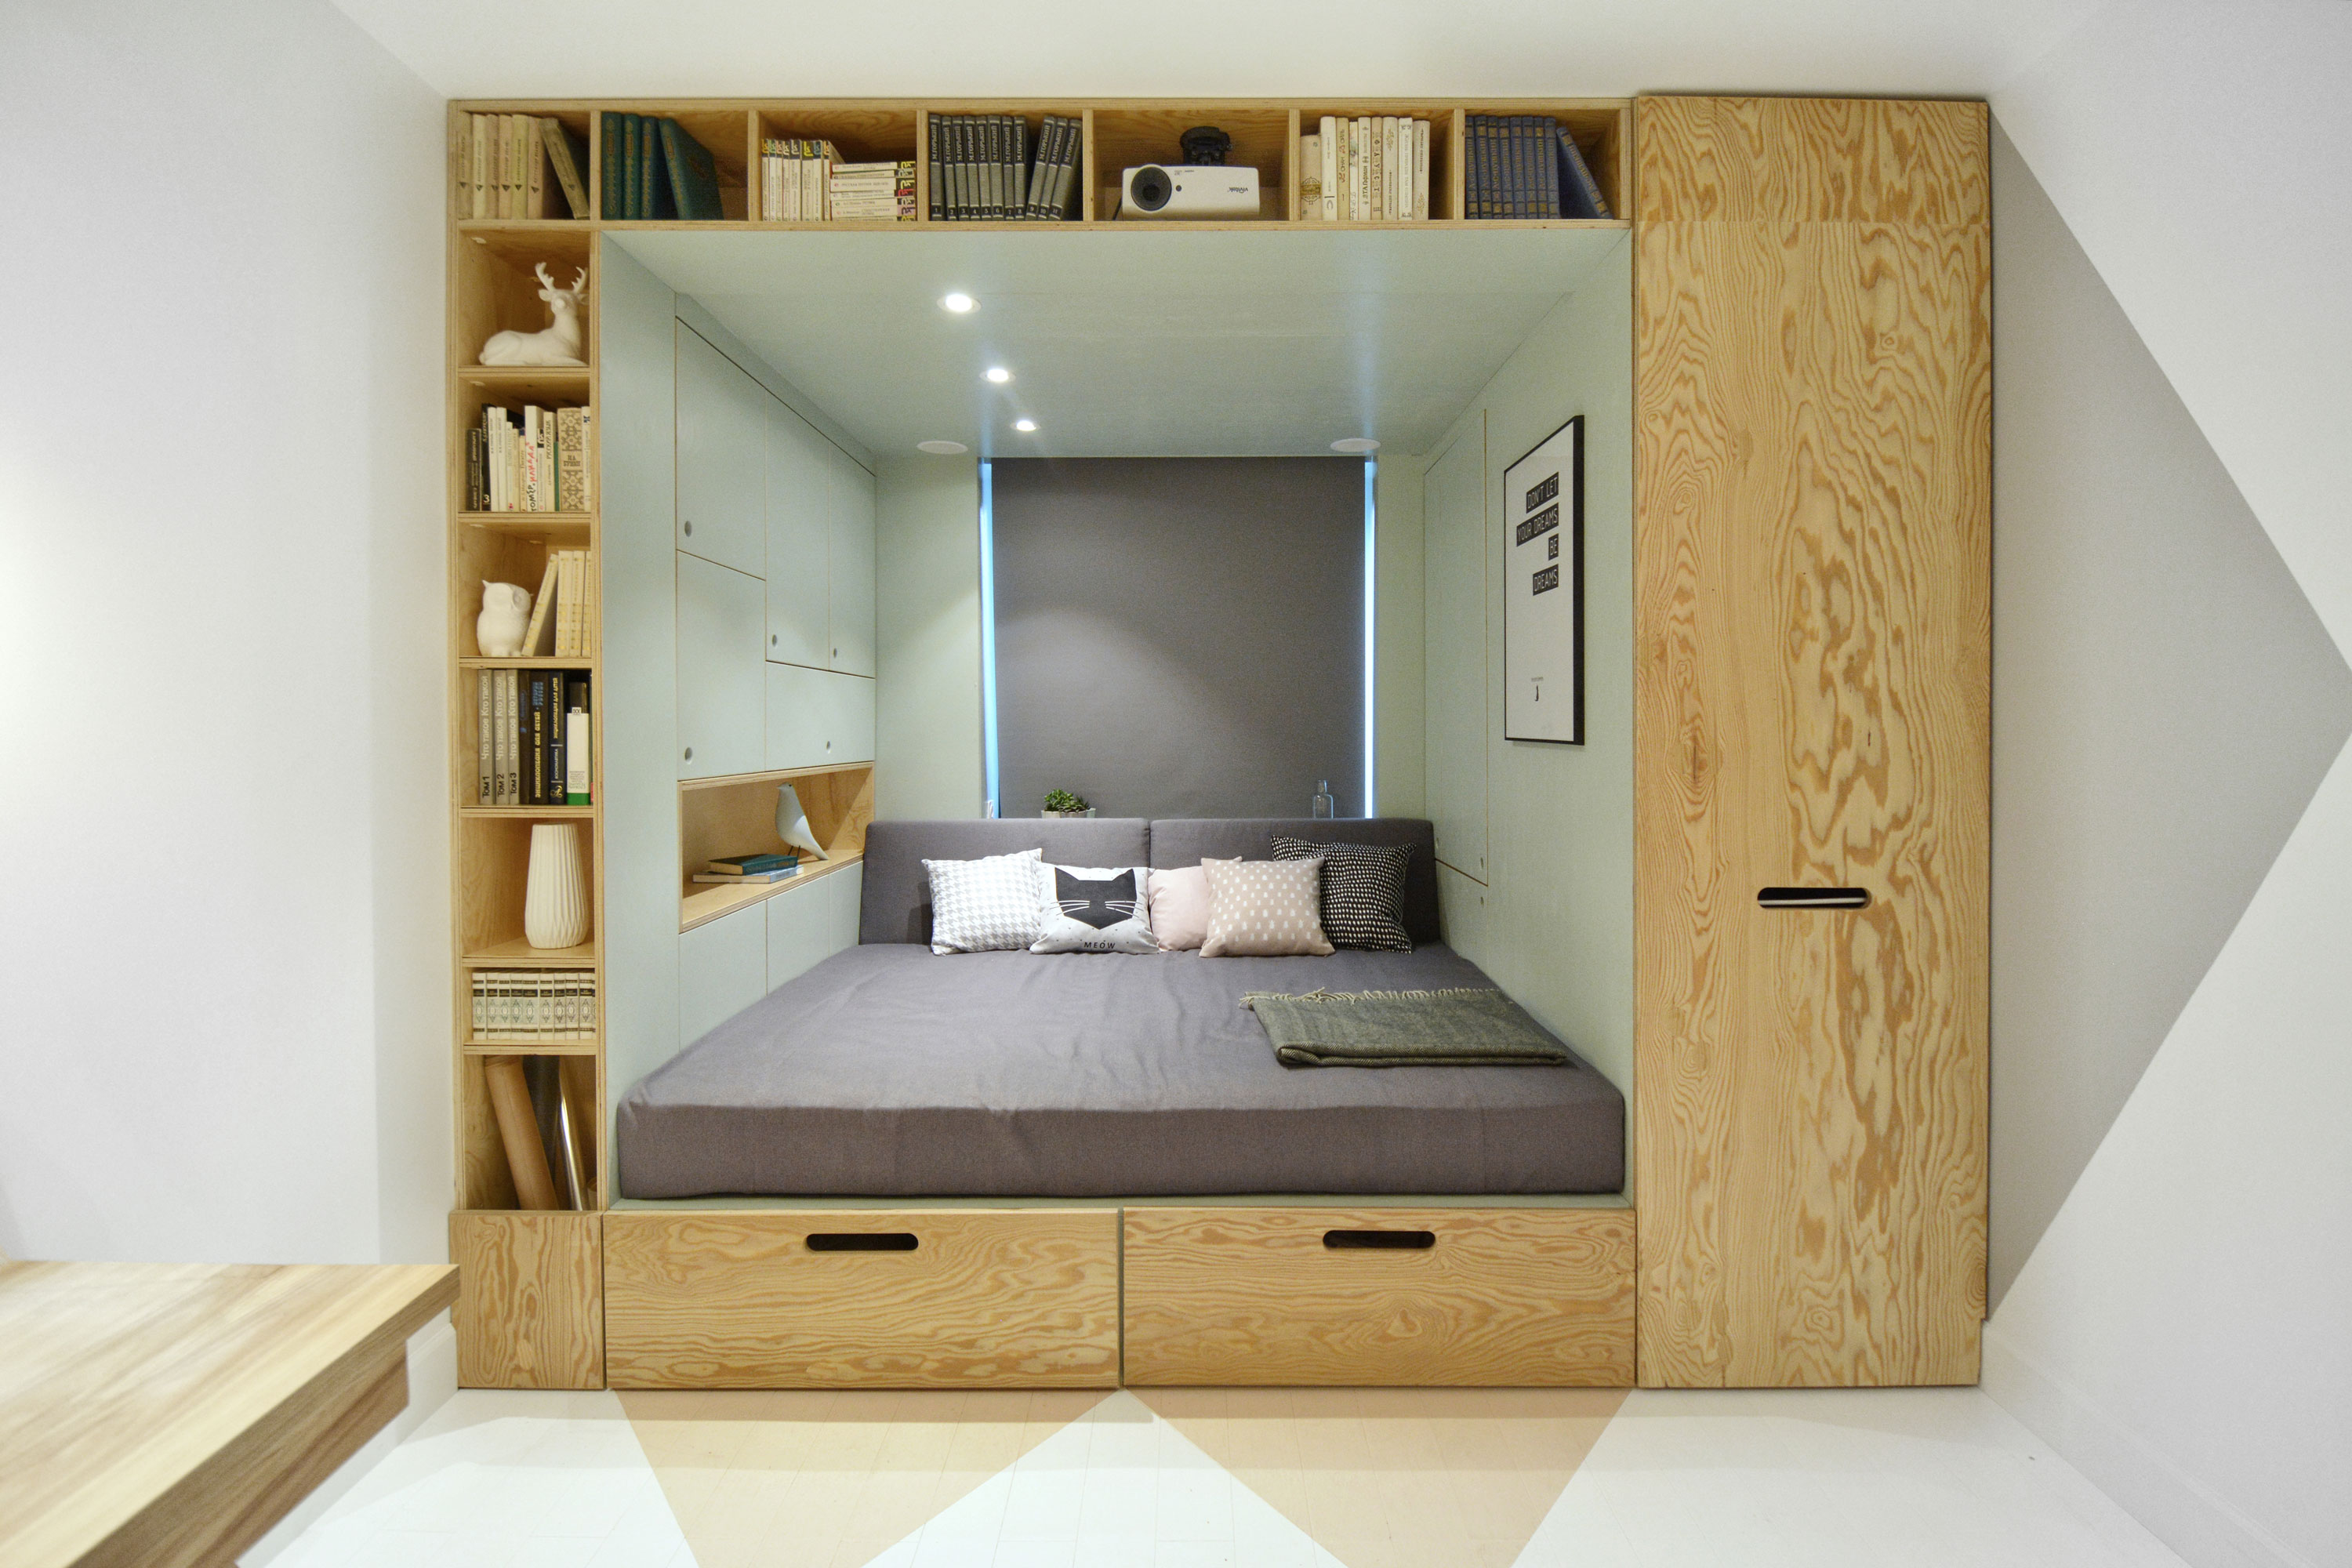 Одна сторона комнаты на 2 м больше. Кровать встроенная в нишу. Кровать в нише. Ниша для кровати. Спальное место в маленькой квартире.